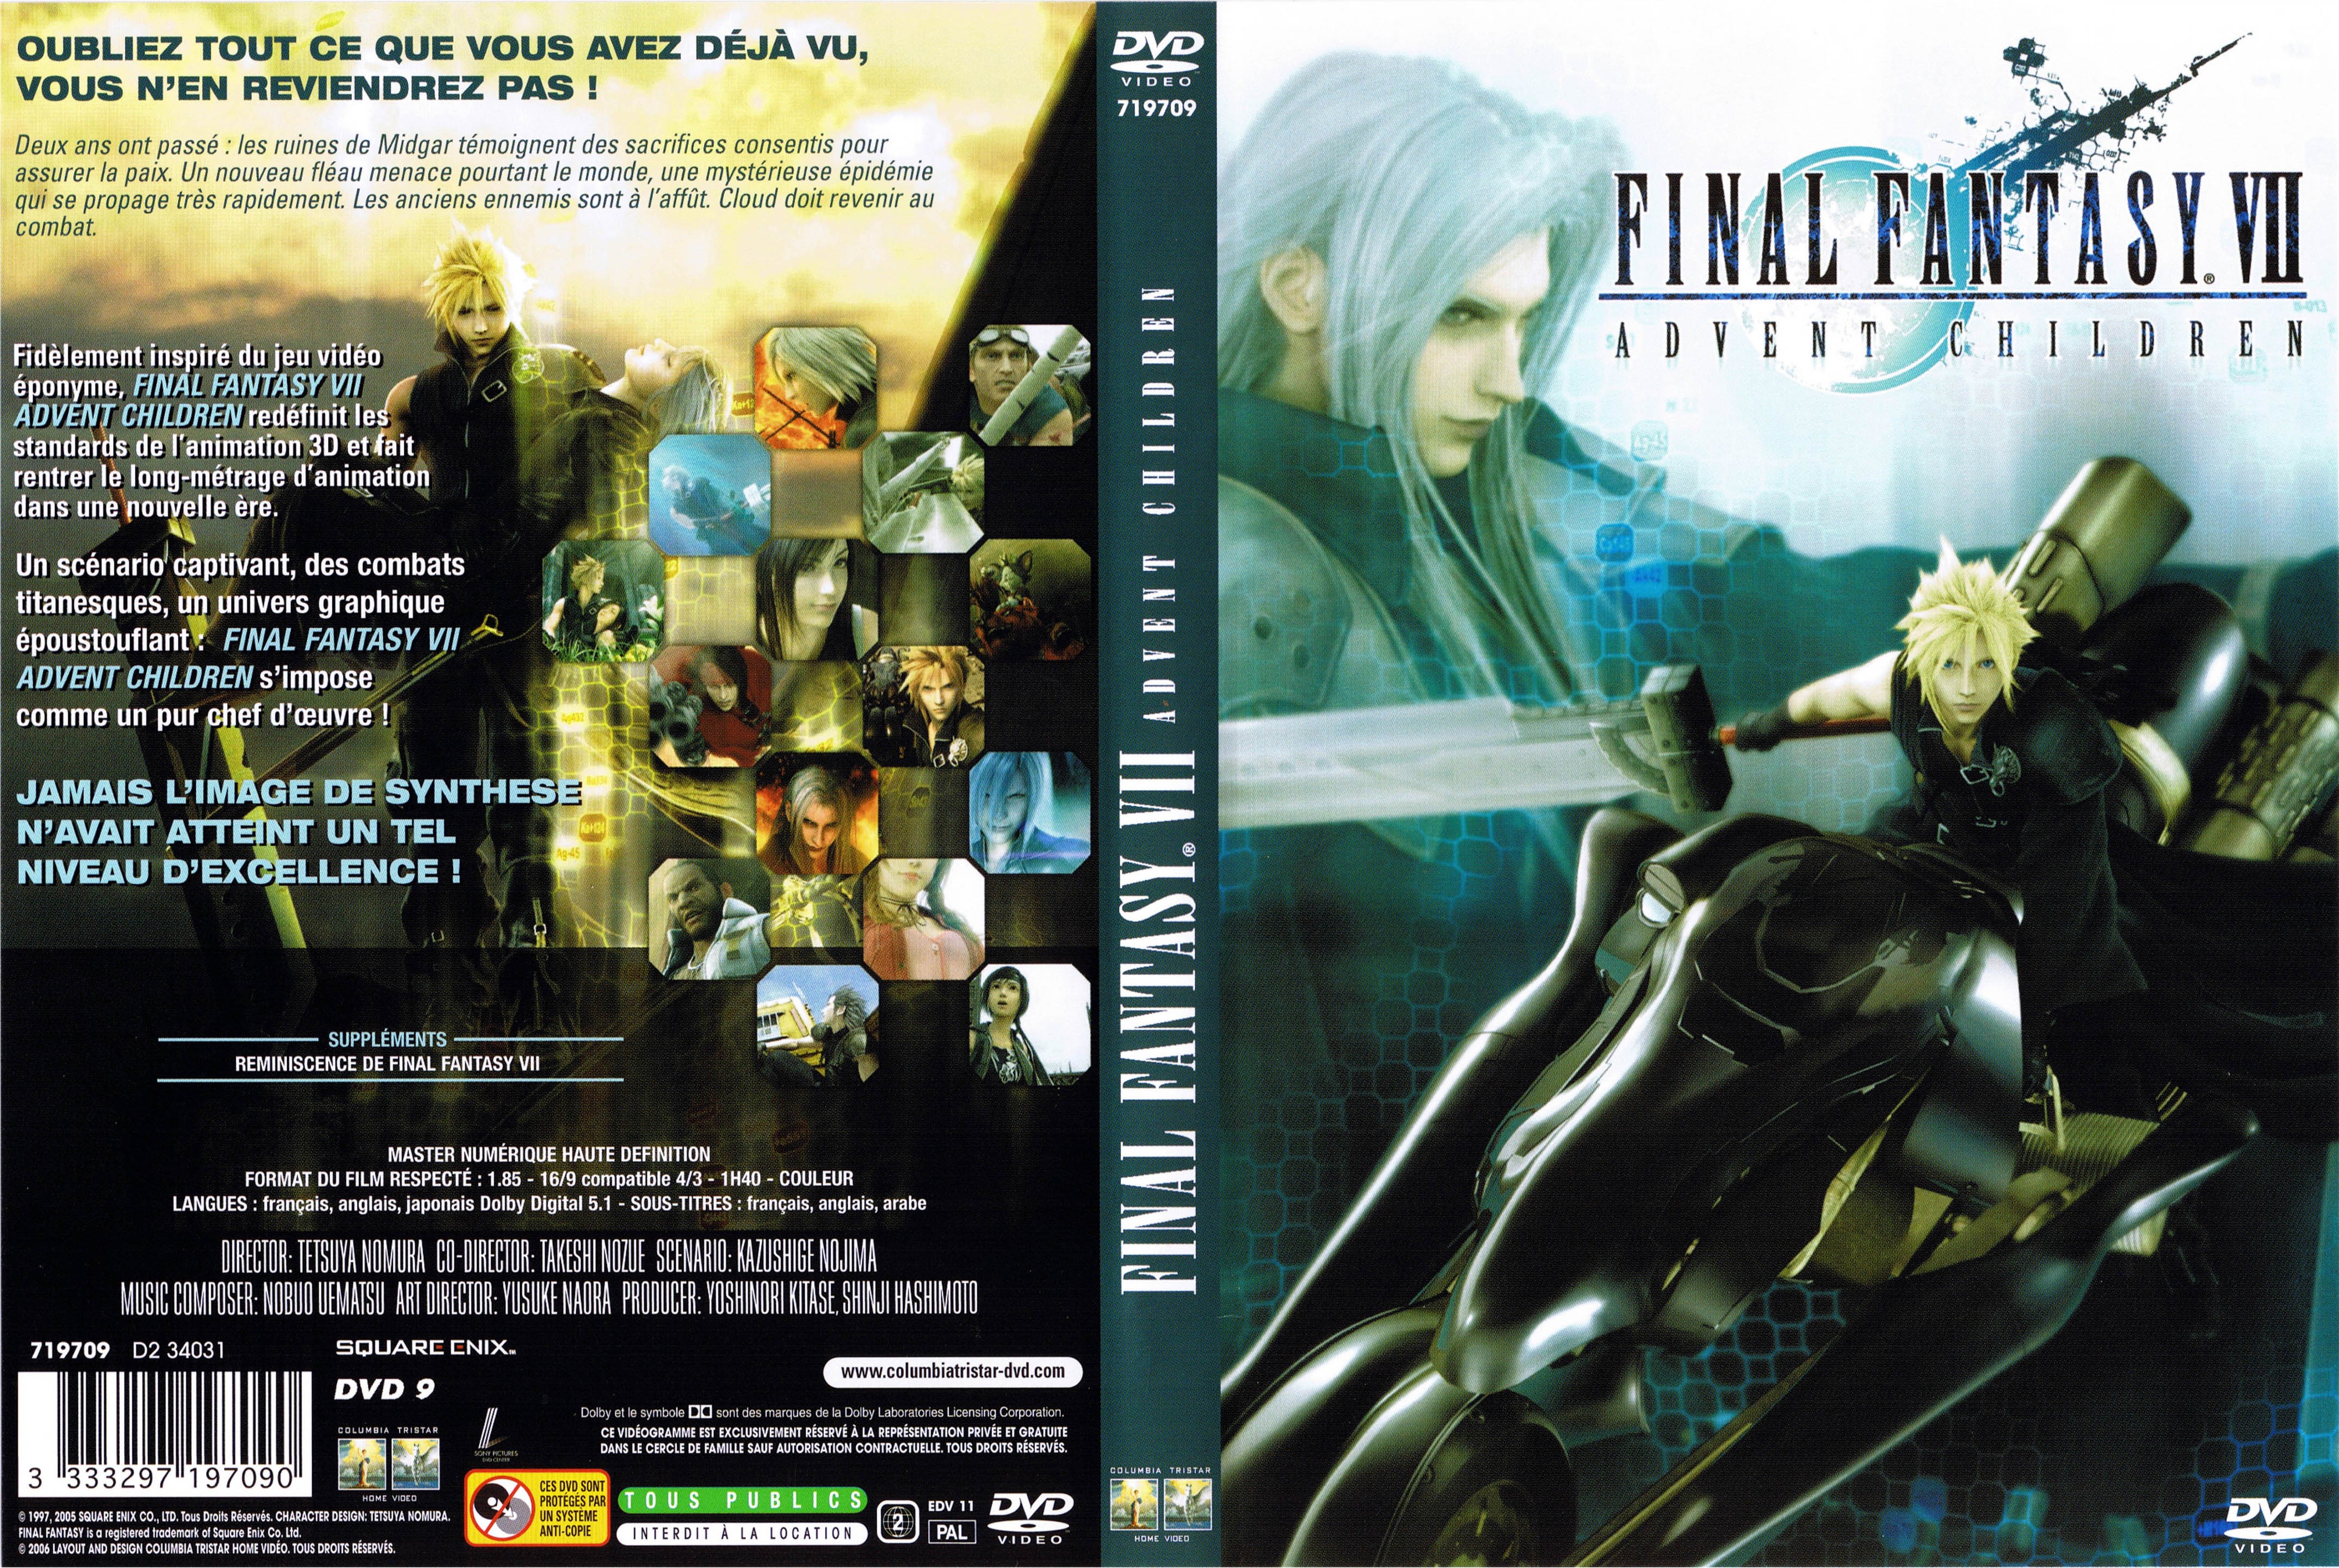 Jaquette DVD Final Fantasy VII Advent Children v2